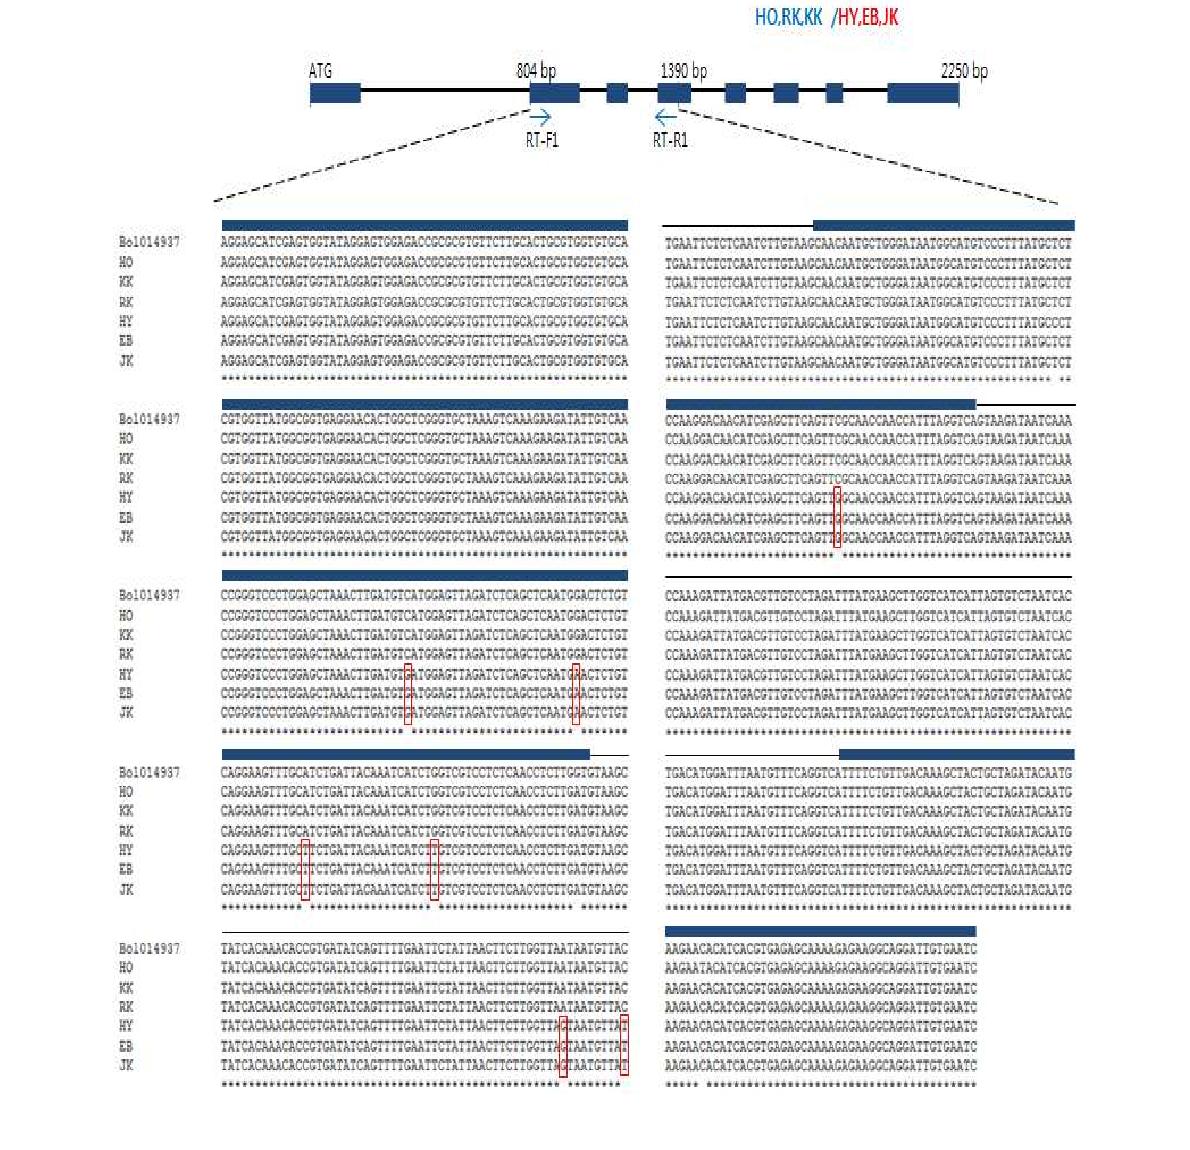 내서성 강/약 5개 계통에 대한 B014937 유전자 영역 염기서열 비교분석.